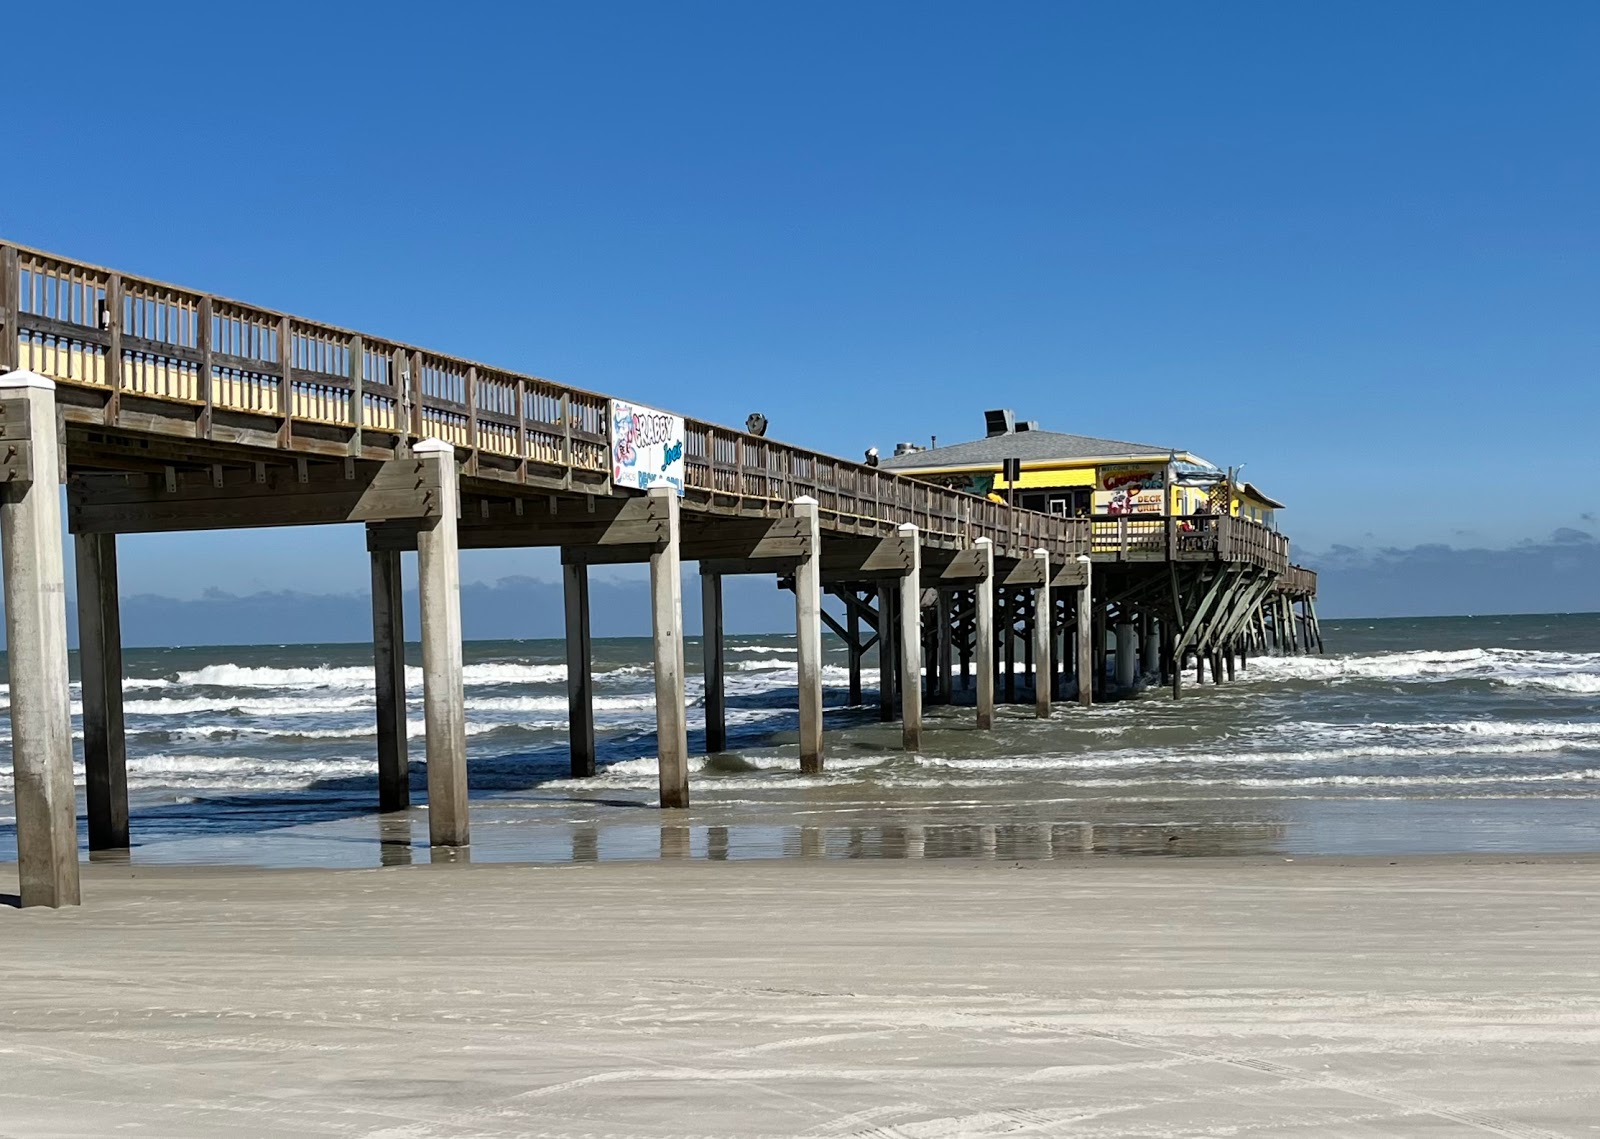 Foto af Daytona beach - populært sted blandt afslapningskendere